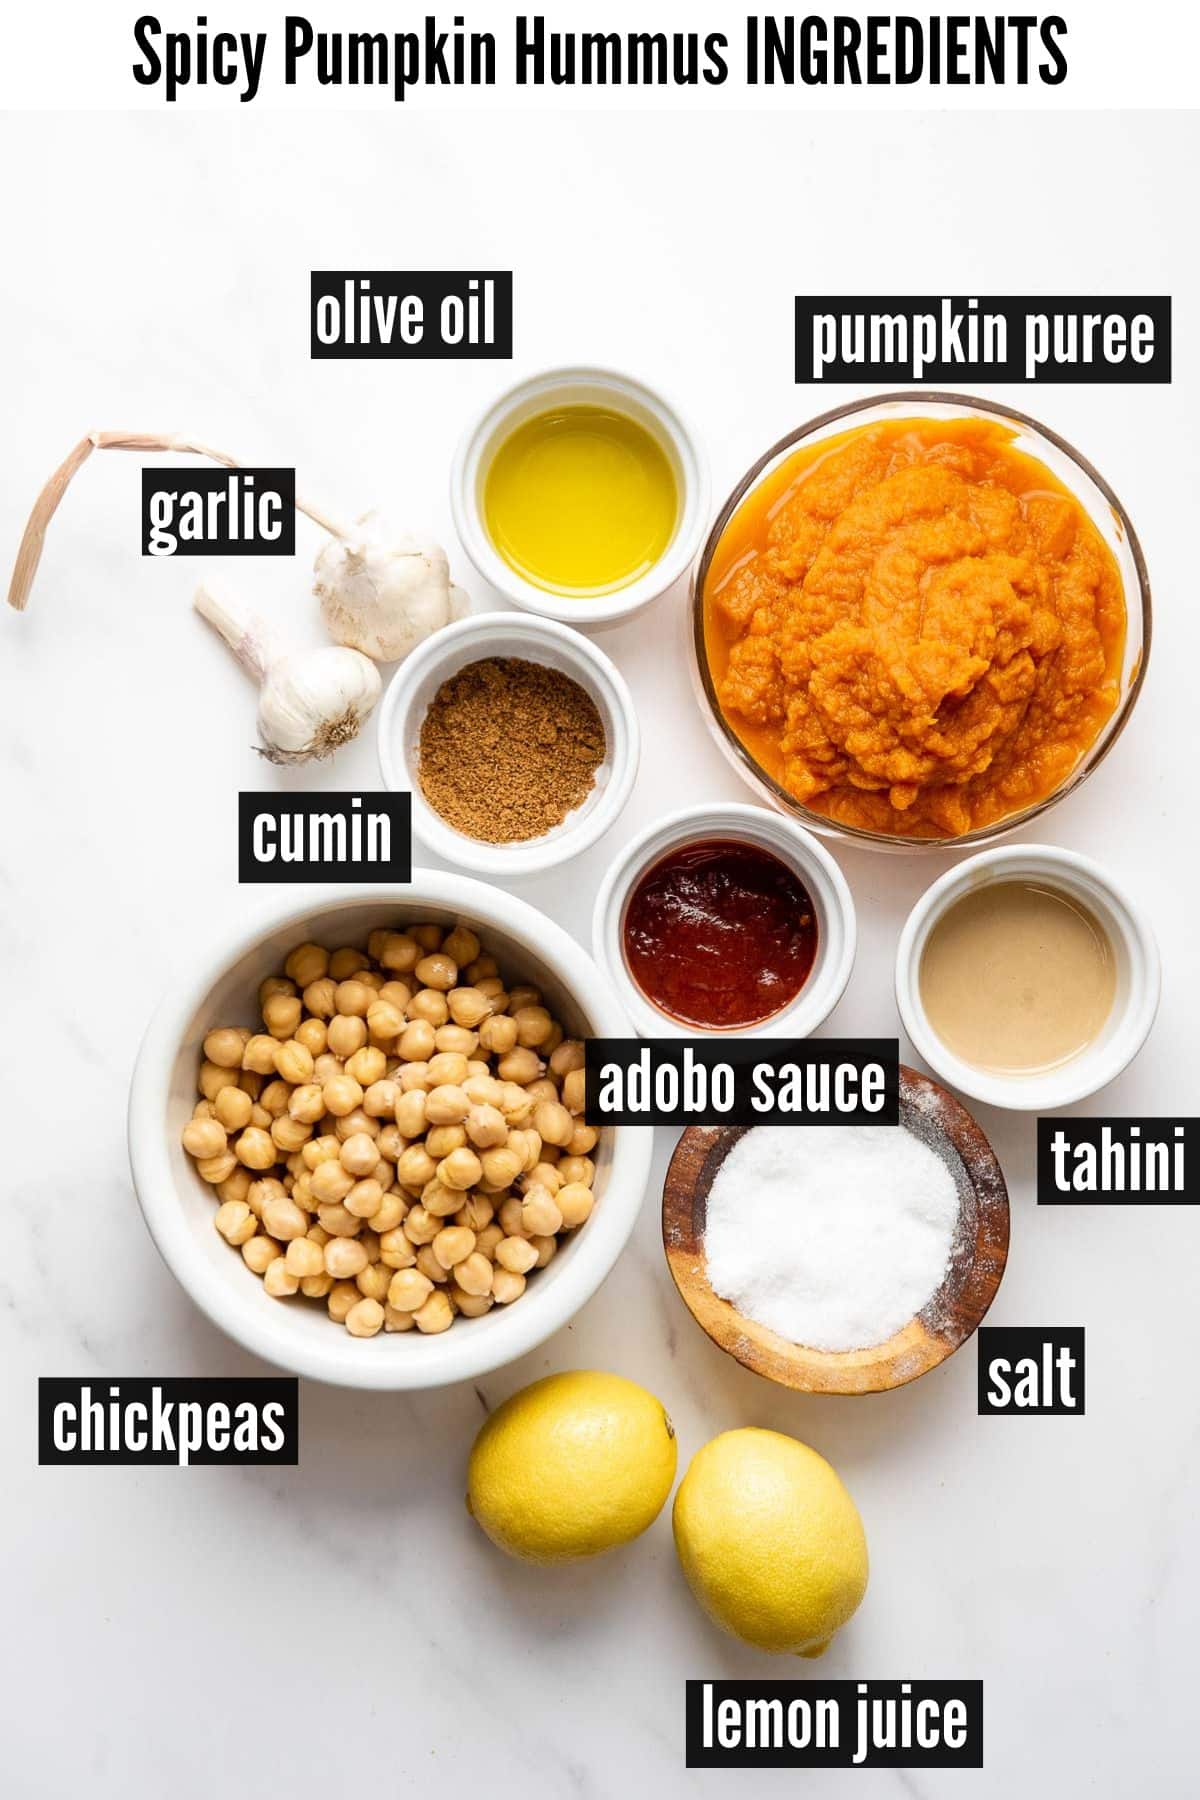 spicy pumpkin hummus labelled ingredients.